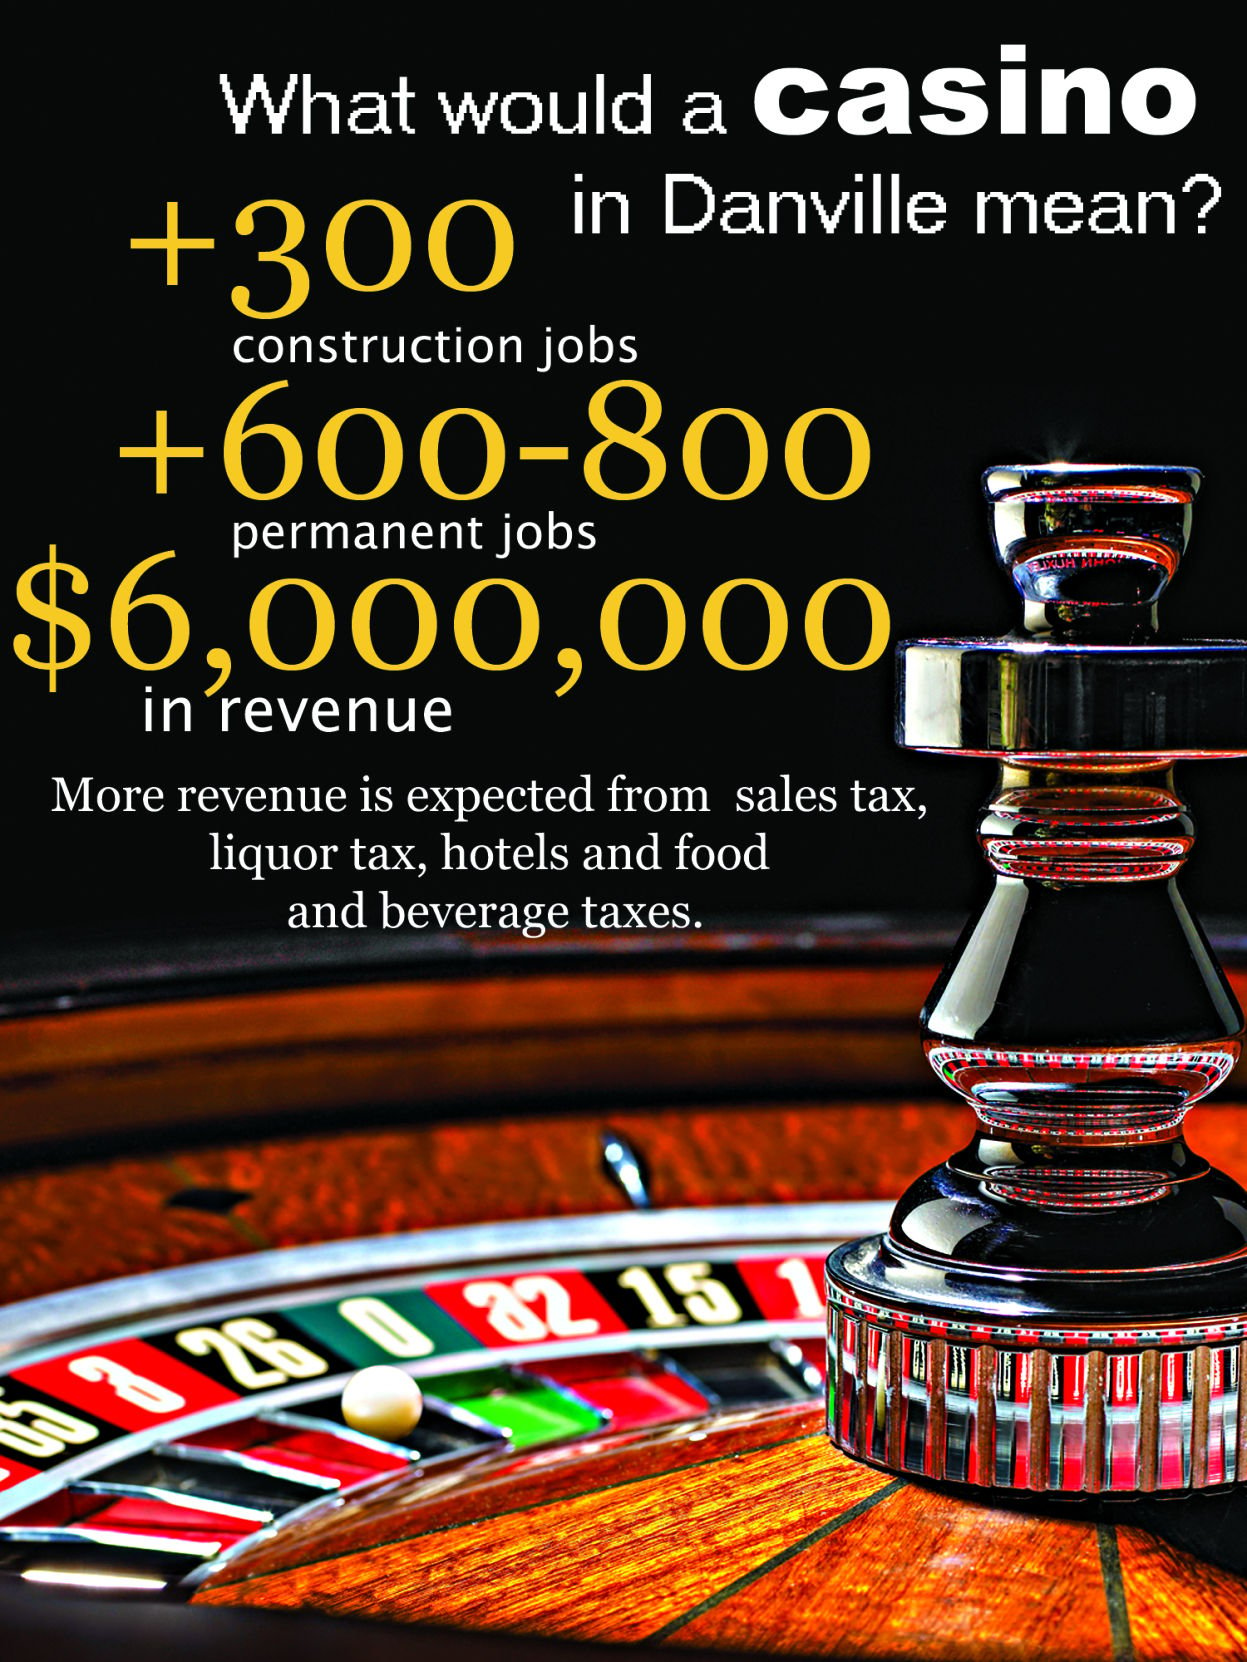 danville casino news